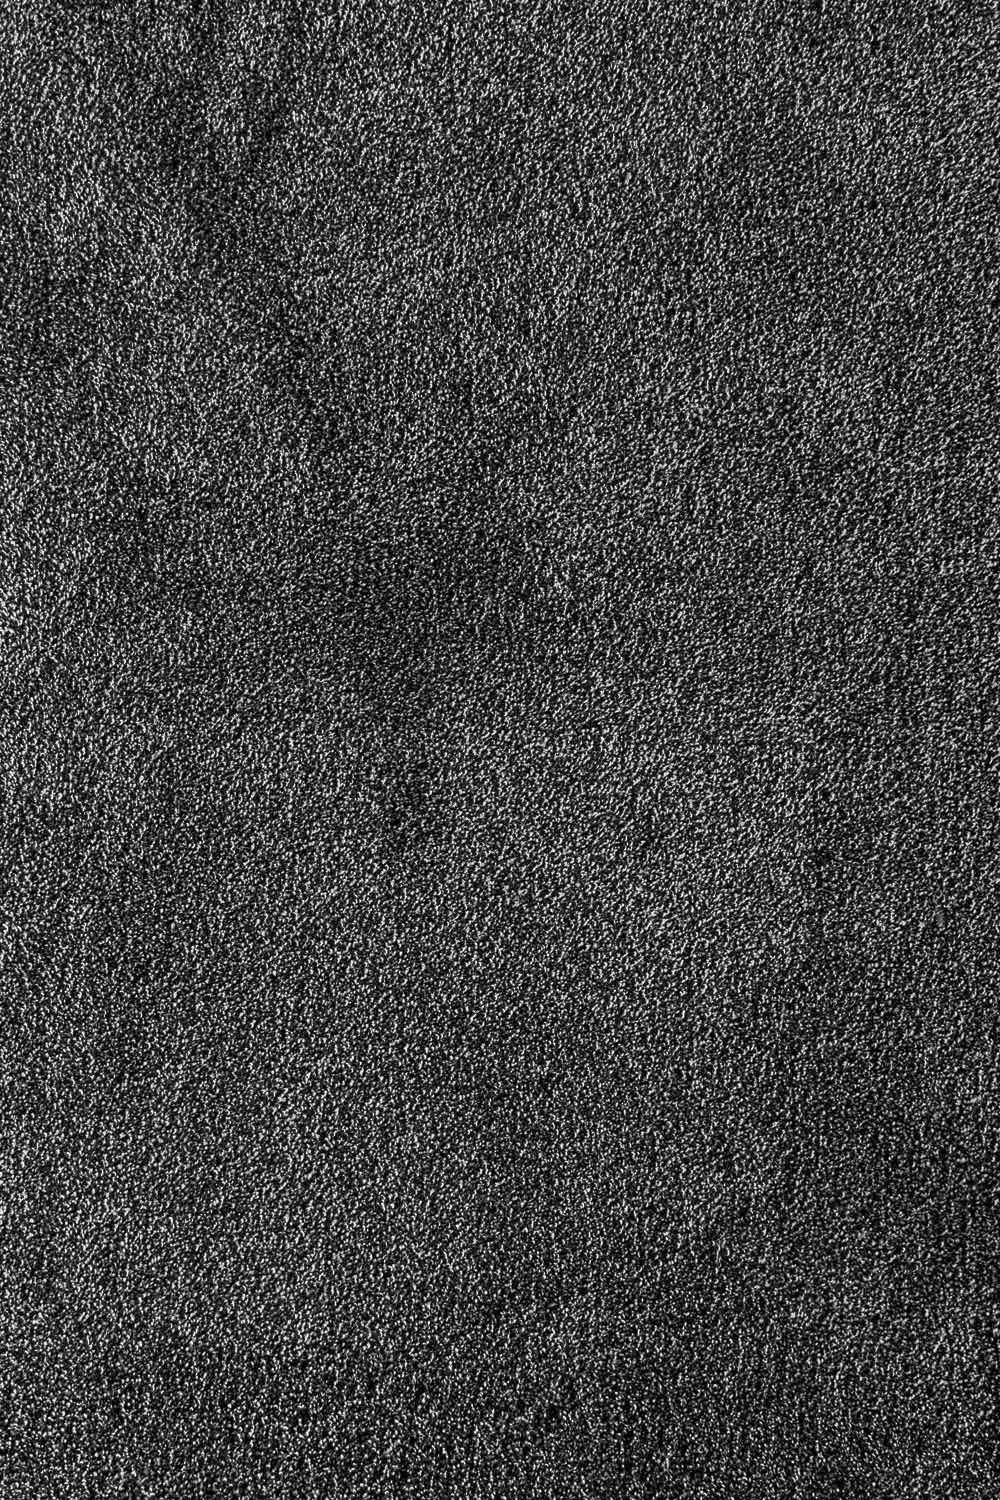 Metrážny koberec VERMONT 177 400 cm